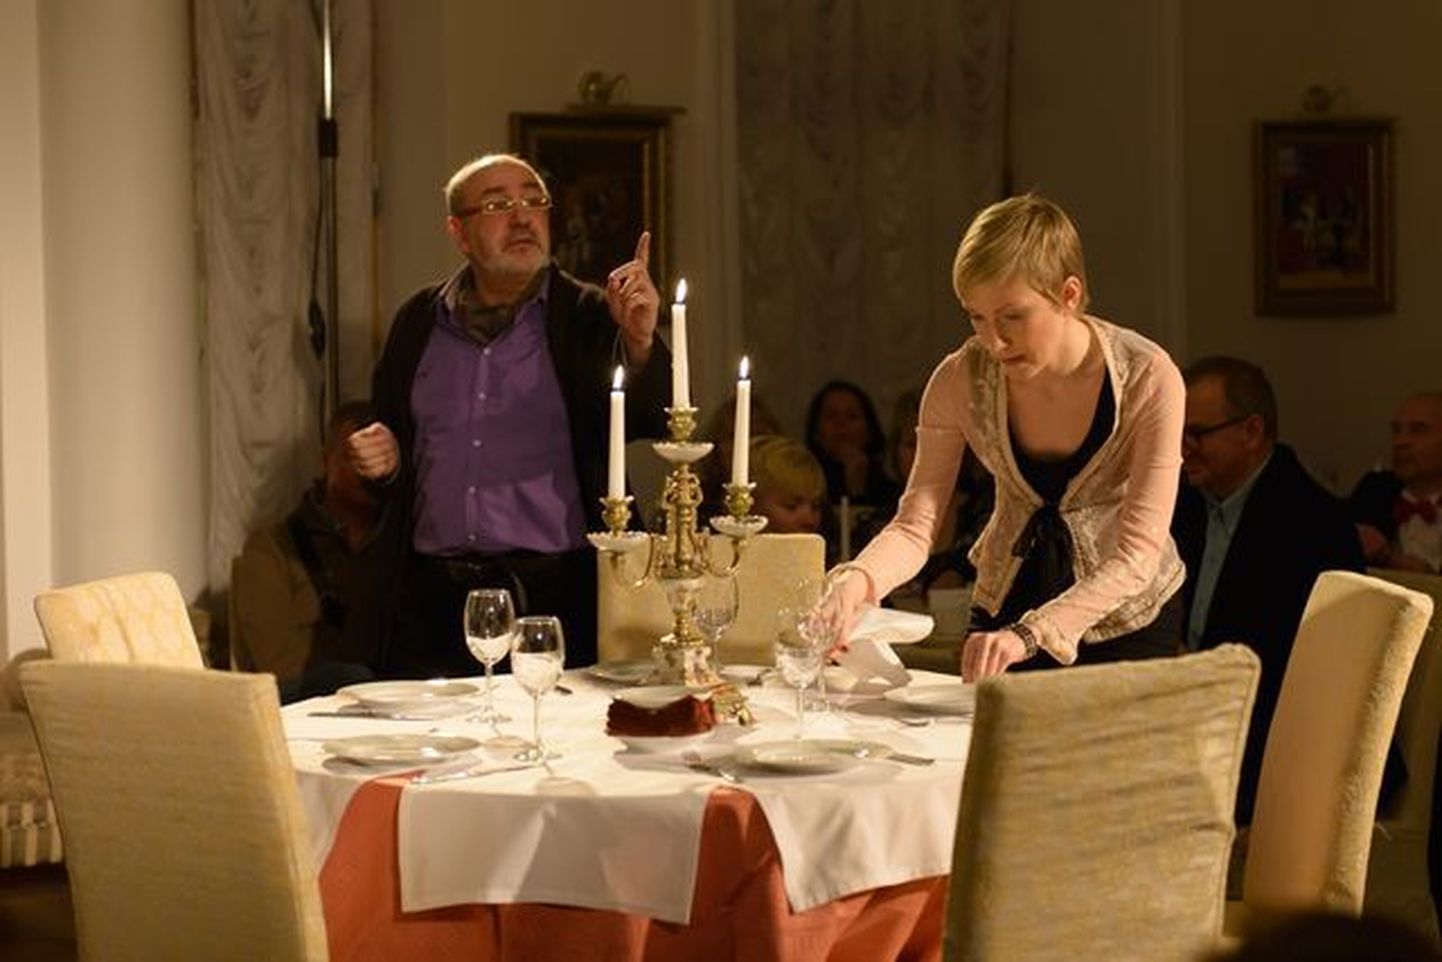 Сцена из спектакля. Пьер (Владимир Барсегян), как обычно, философствует, а его жена Элизабет (Татьяна Космынина) сервирует стол к ужину, который станет для персонажей спектакля проверкой на порядочность